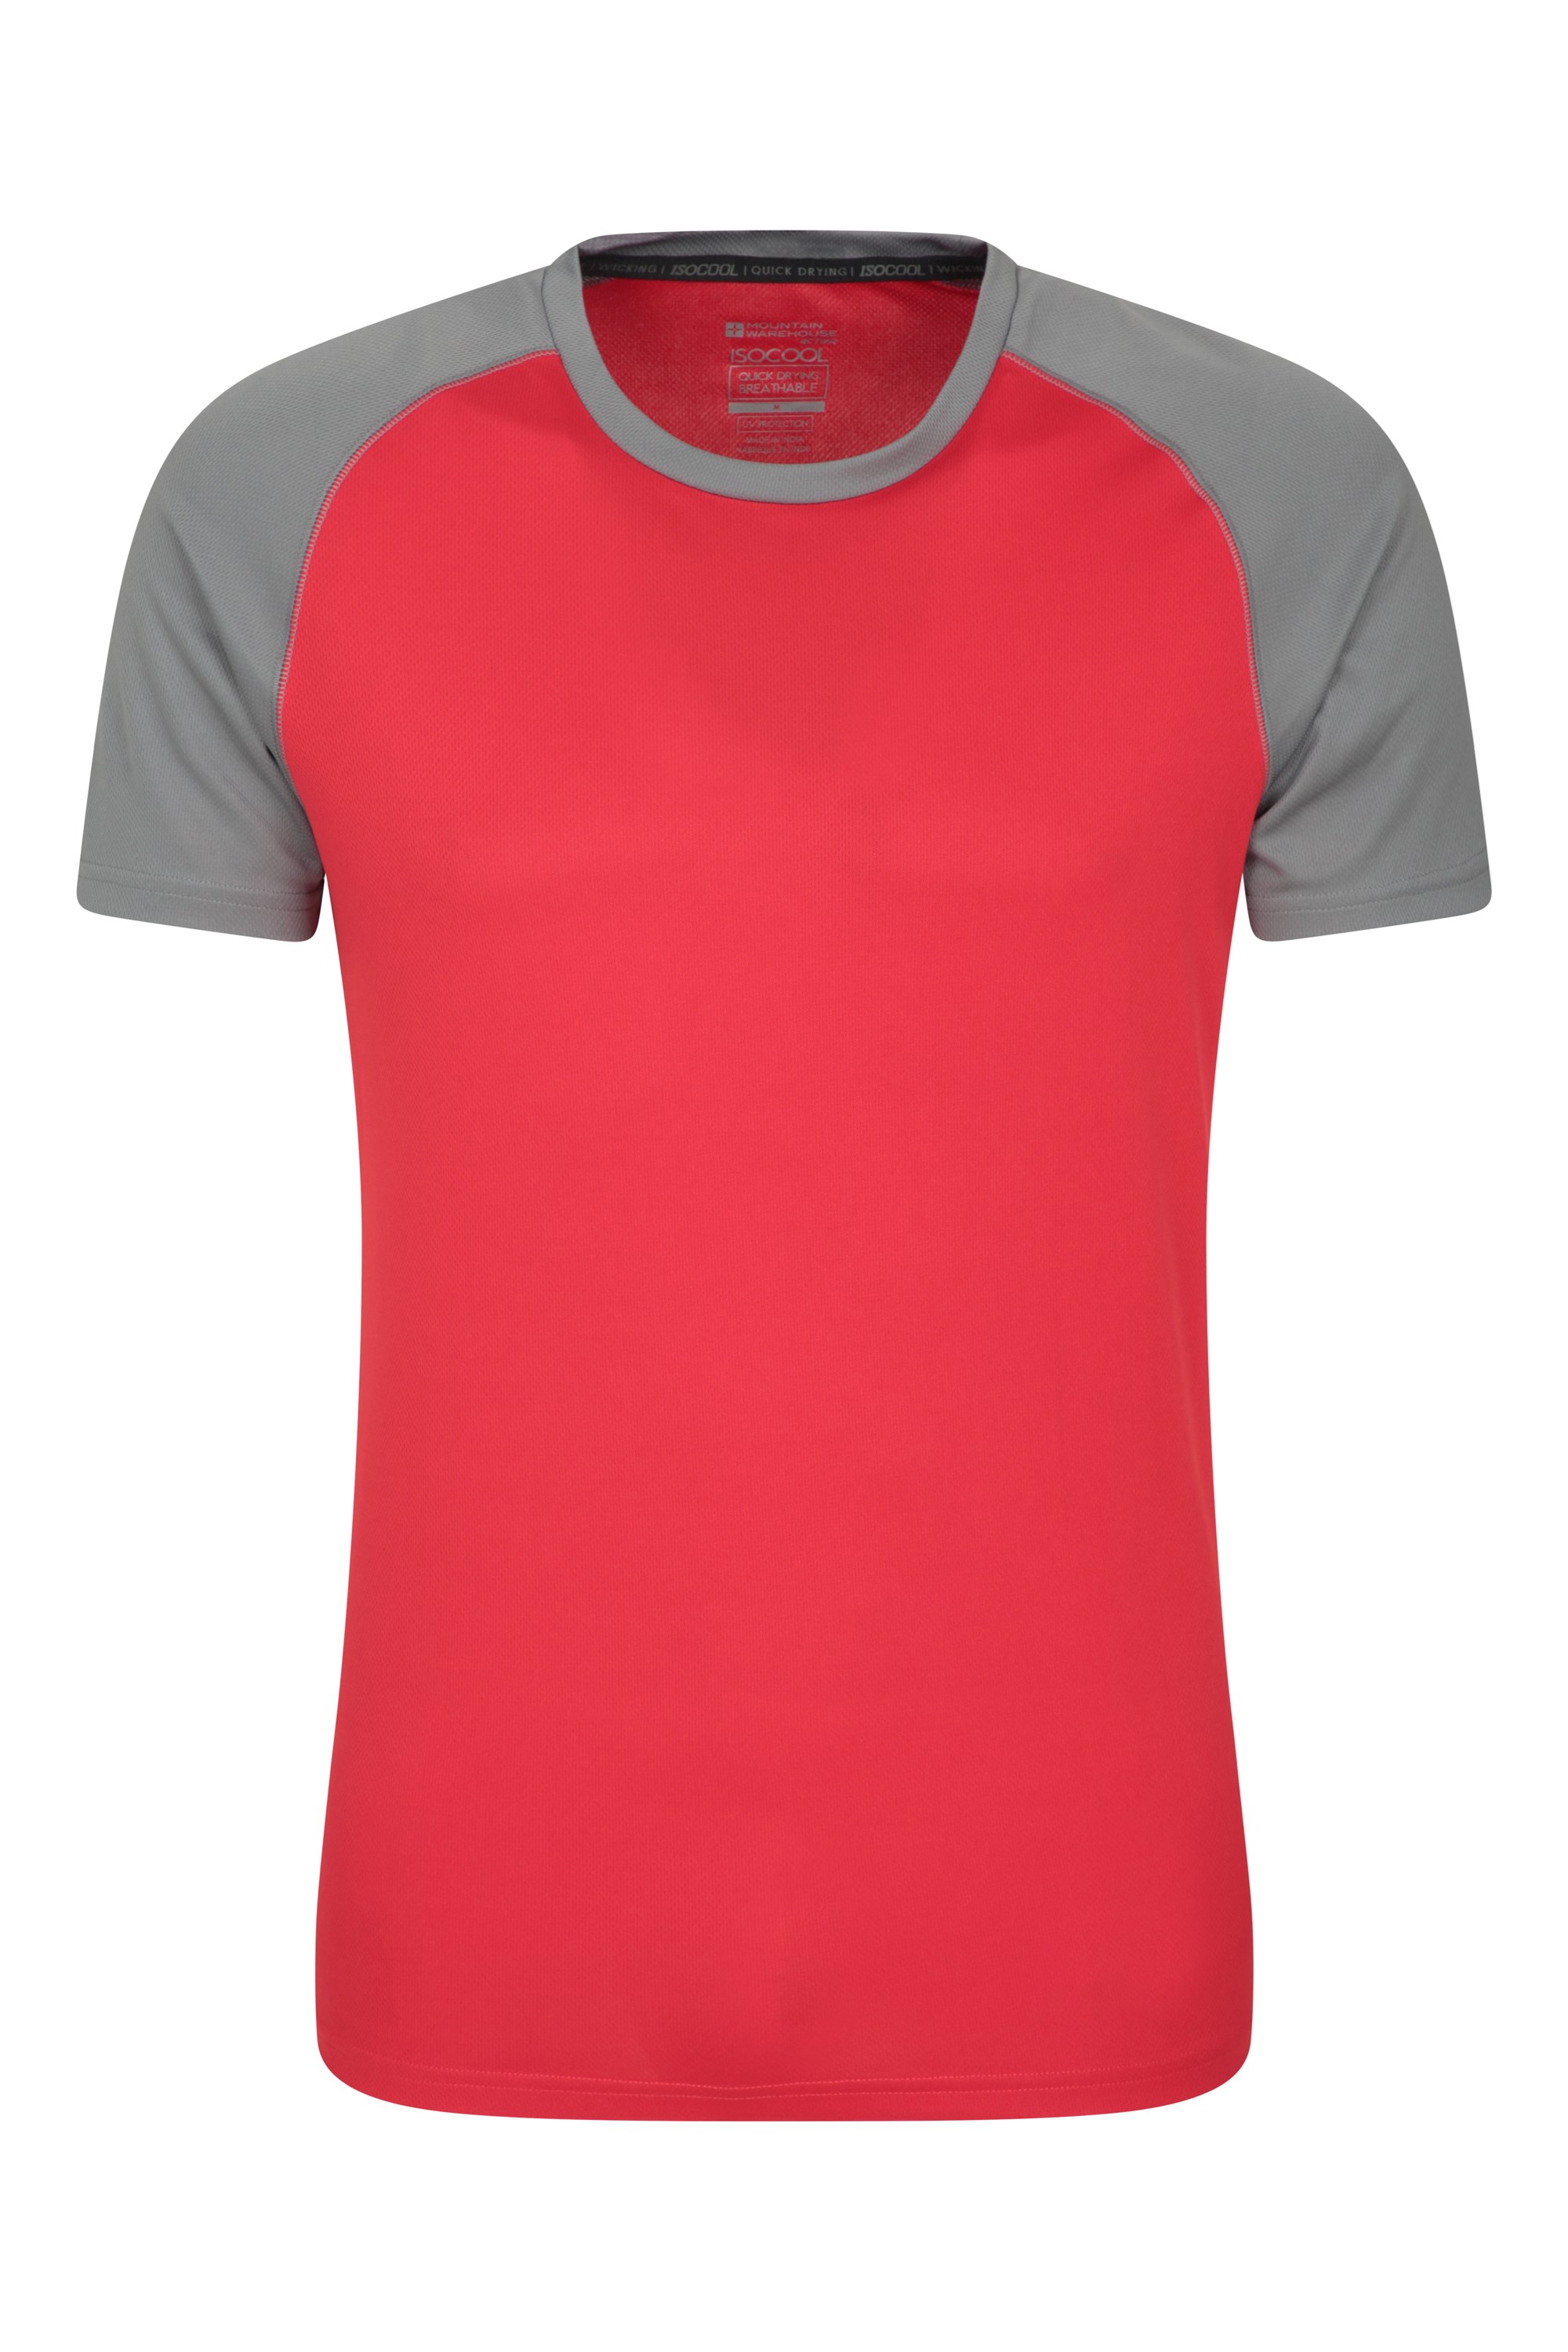 T-Shirt Traspirante e Leggera con Stampa di qualità e Protezione UV per Primavera Marca: Mountain WarehouseMountain Warehouse T-Shirt da Uomo in Tessuto con Stampa Campeggio Vacanze Estate 